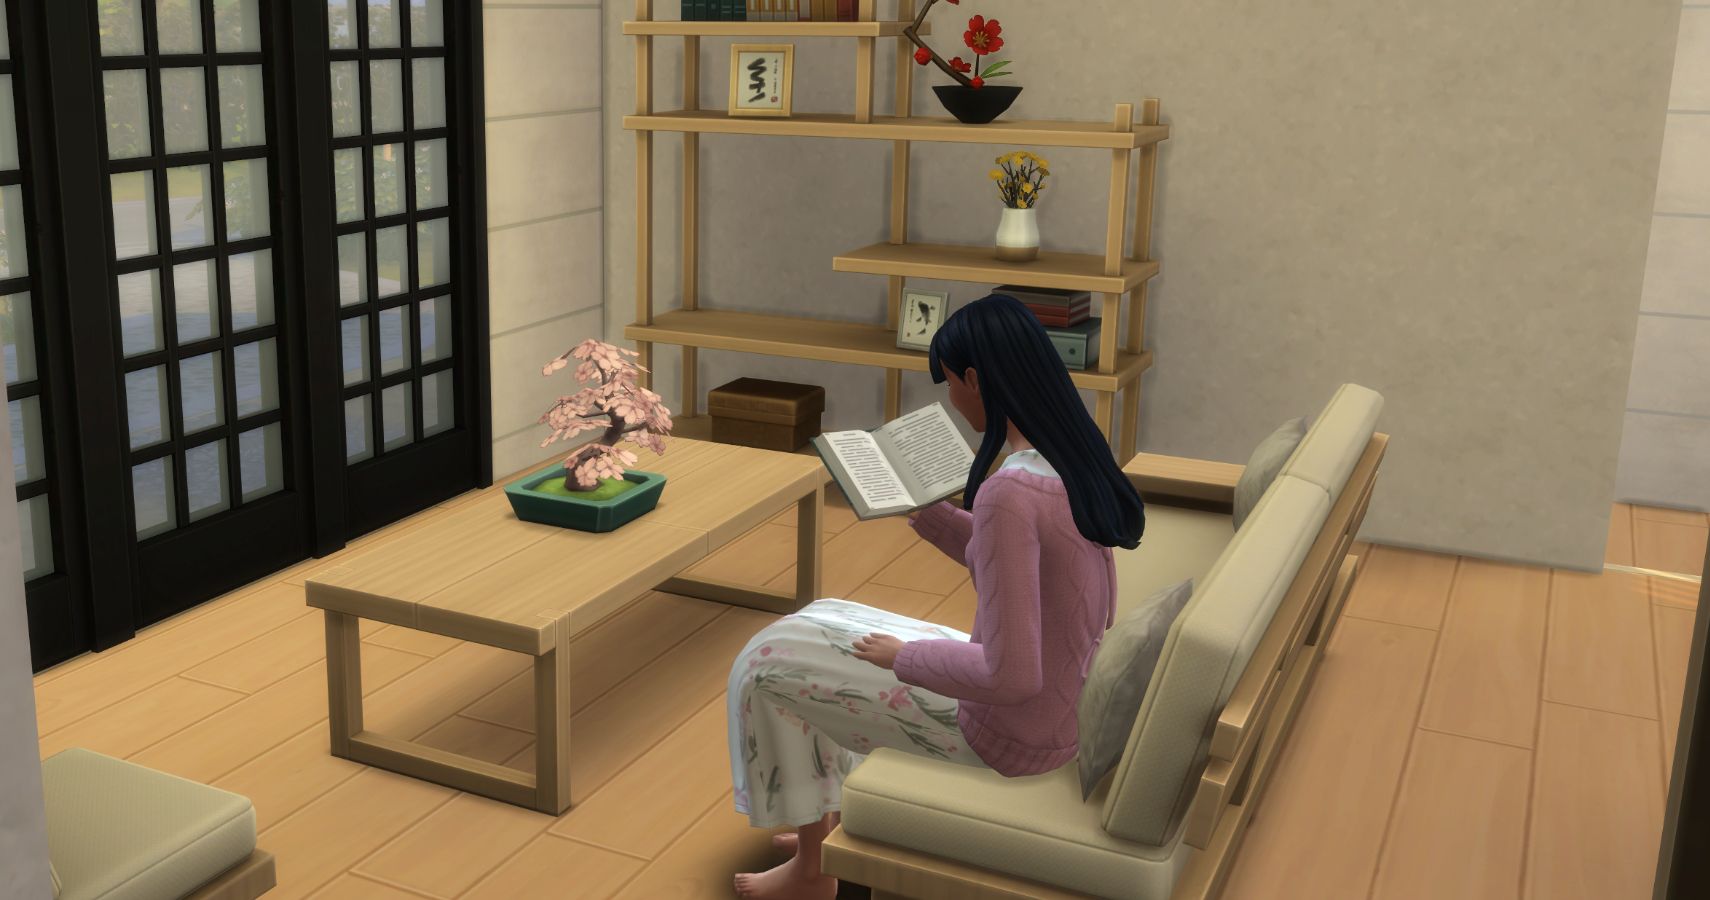 A sim reading a book